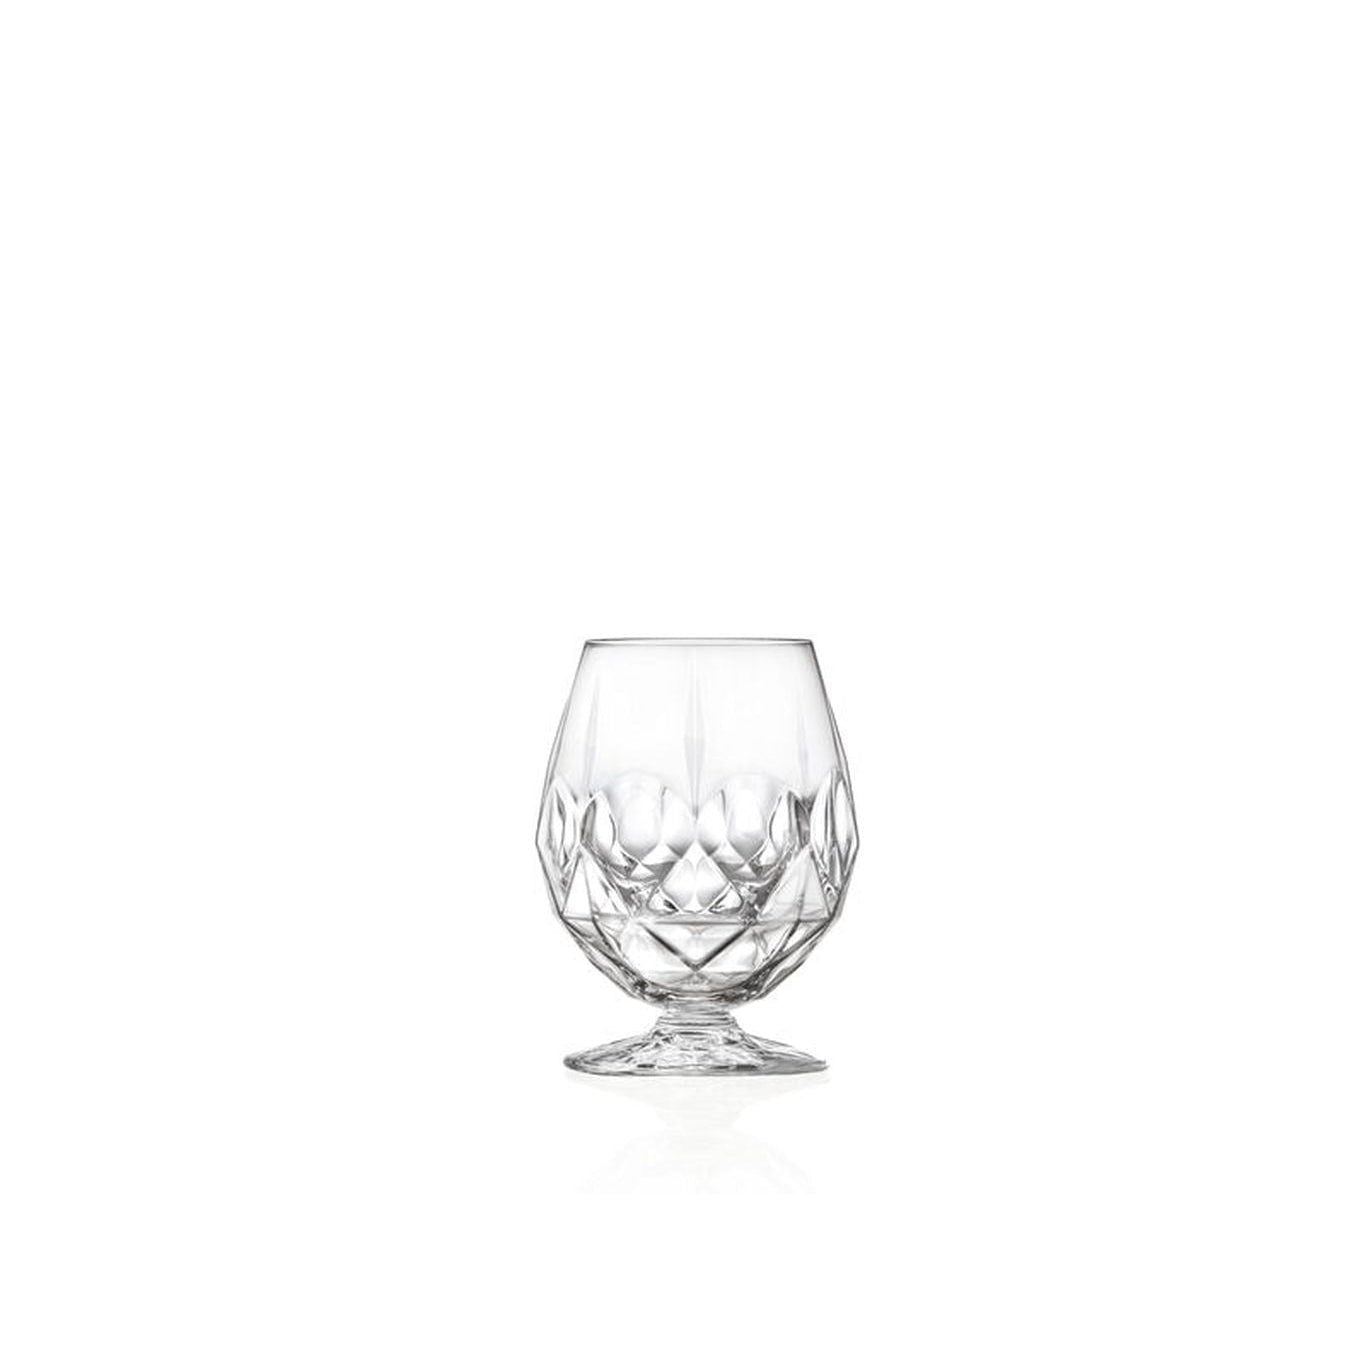 Lyngby Glas alkemist Krystal Beer Glass 53 CL, 2 PCS.